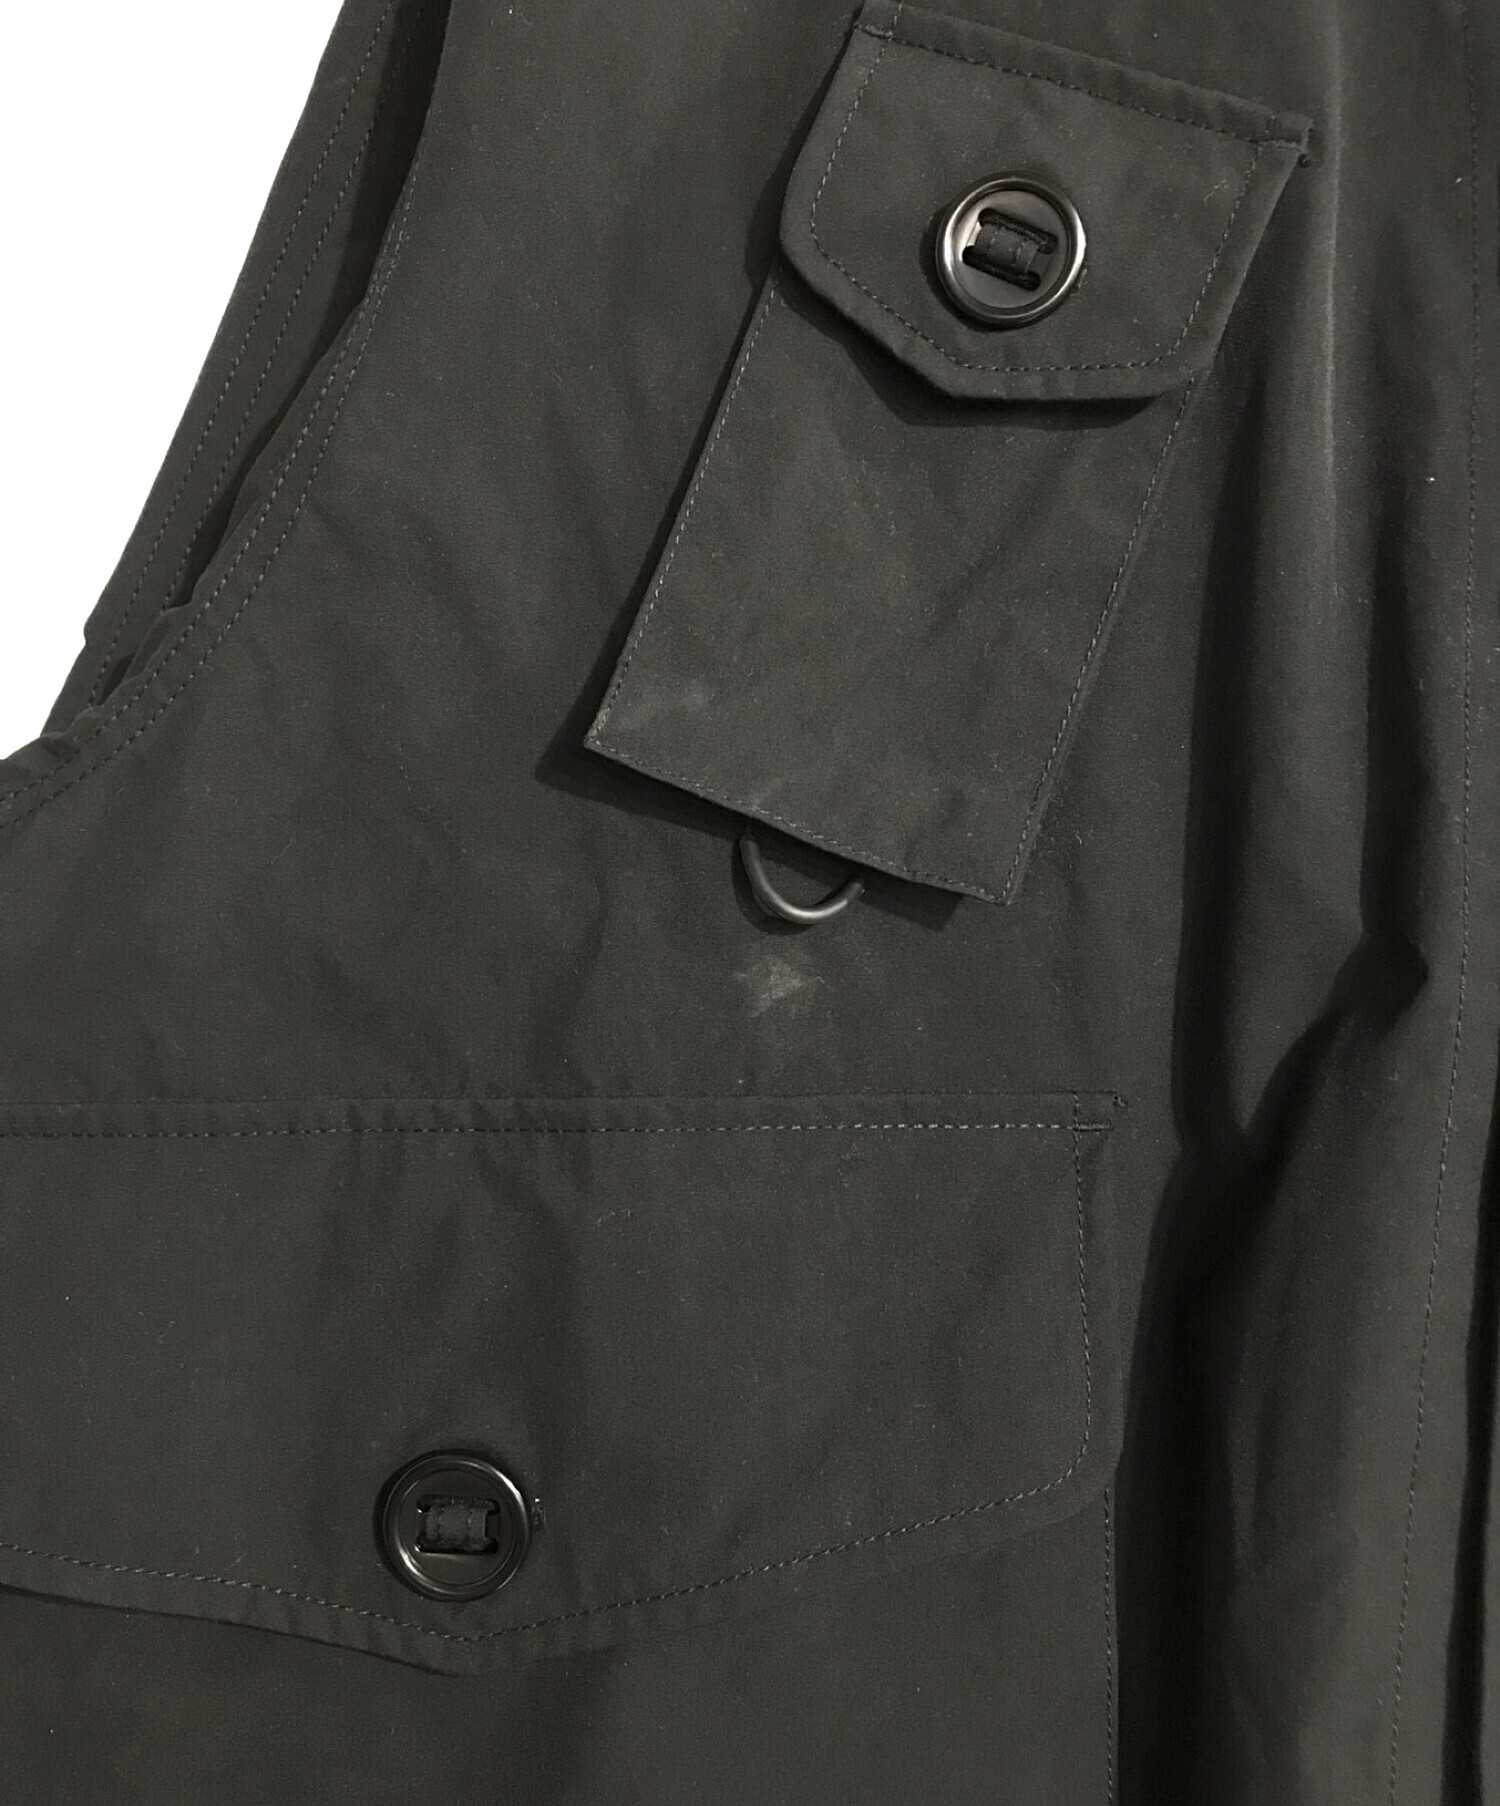 DAIWA PIER39 (ダイワ ピア39) テックカナディアンファティーグジャケット ブラック サイズ:L